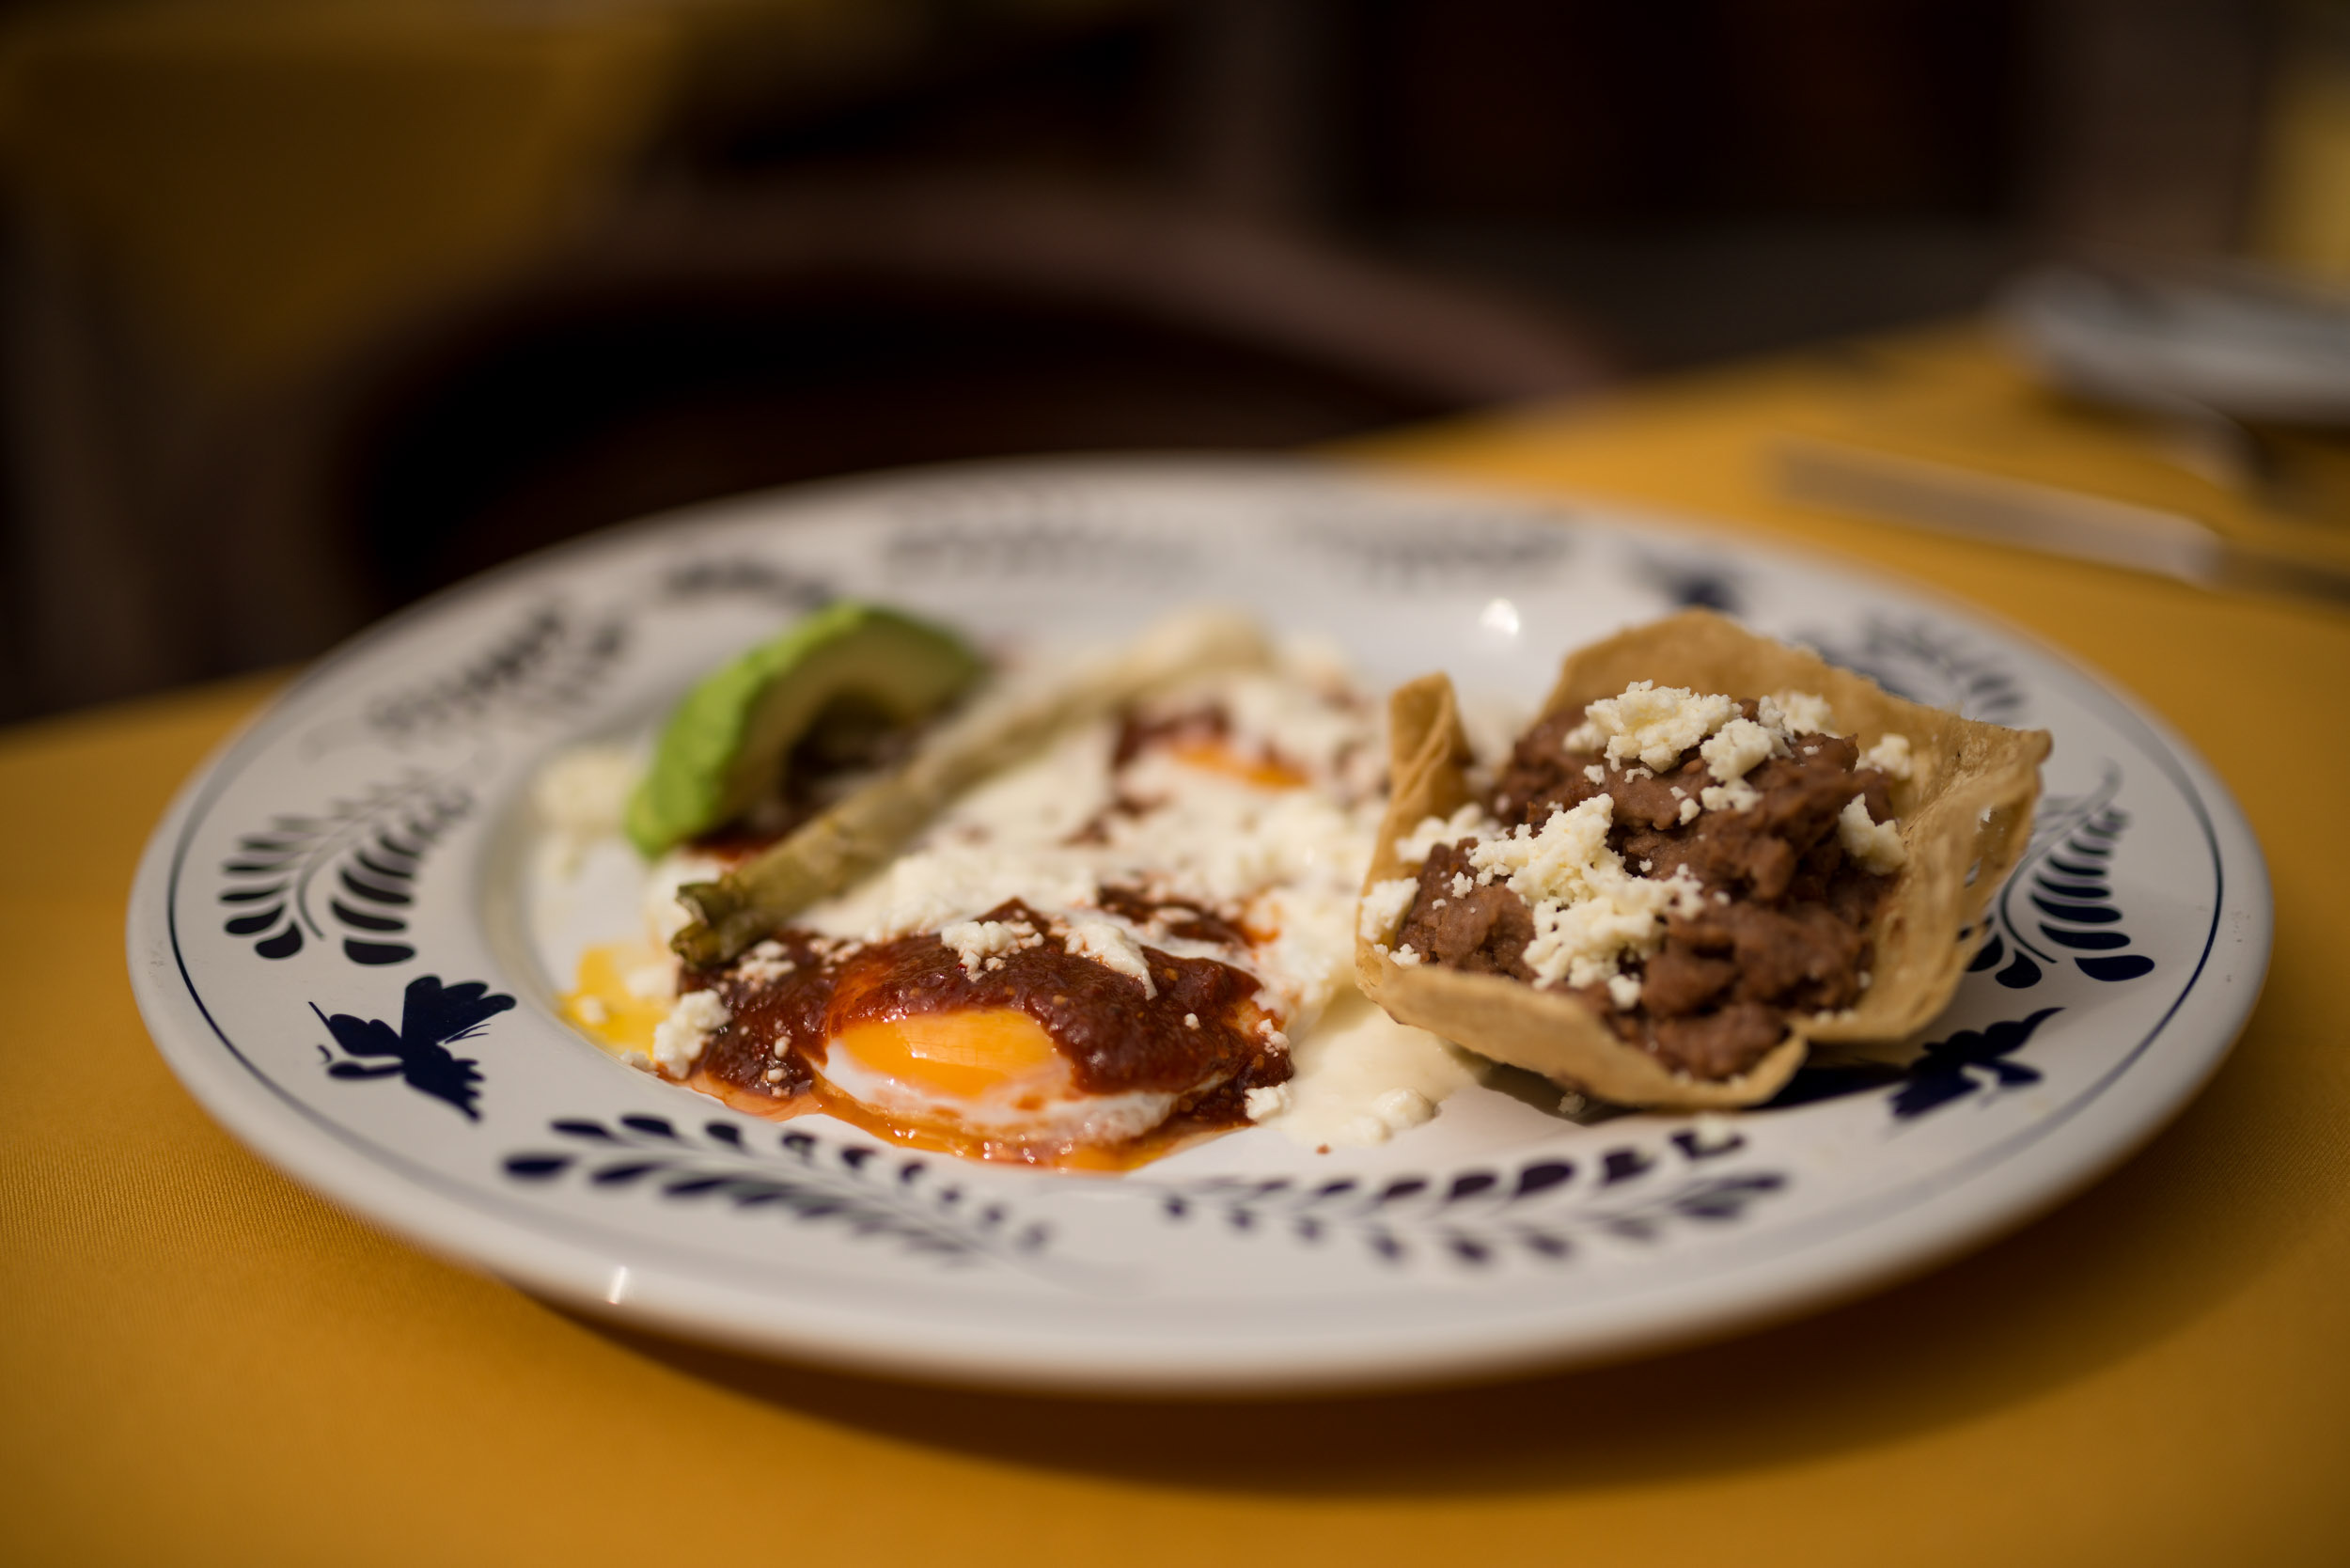 huevos-rancheros-egg-mexican-cuisine-food-san-miguel-de-allende-guanajuato-mexico